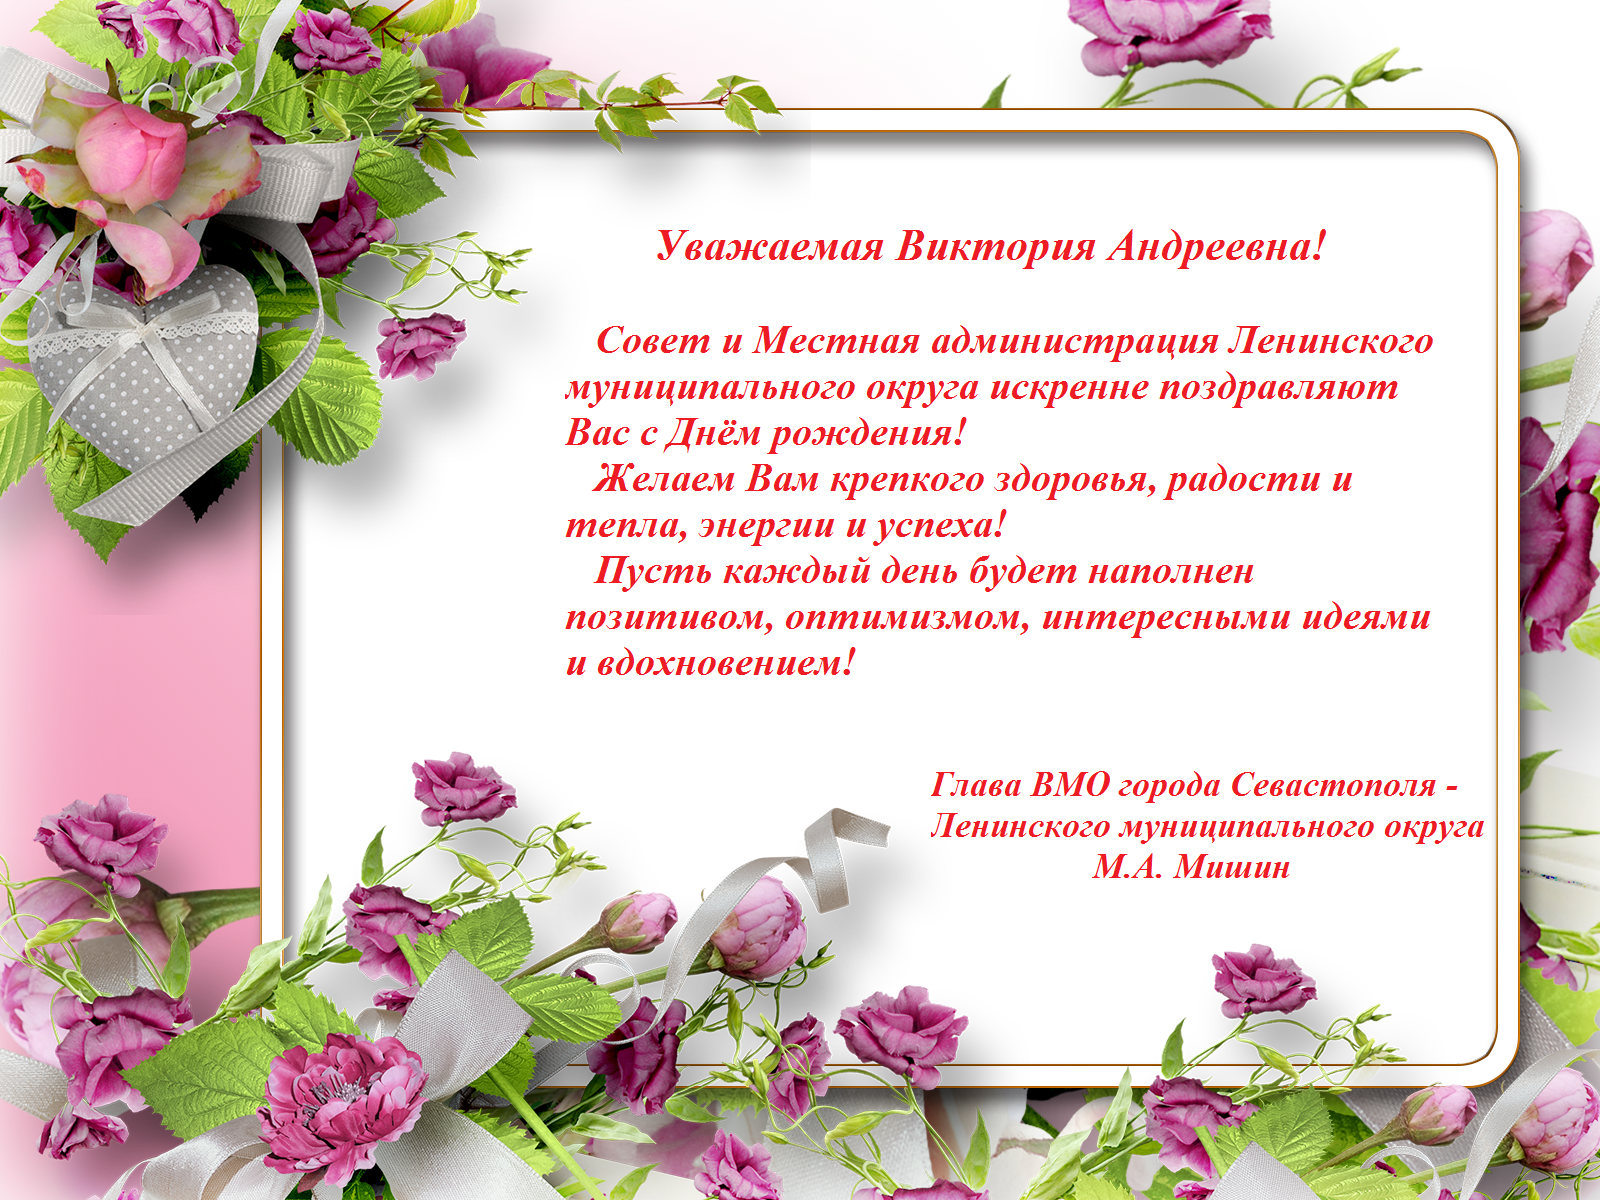 Поздравляем П.И. Чумакова с днем рождения!